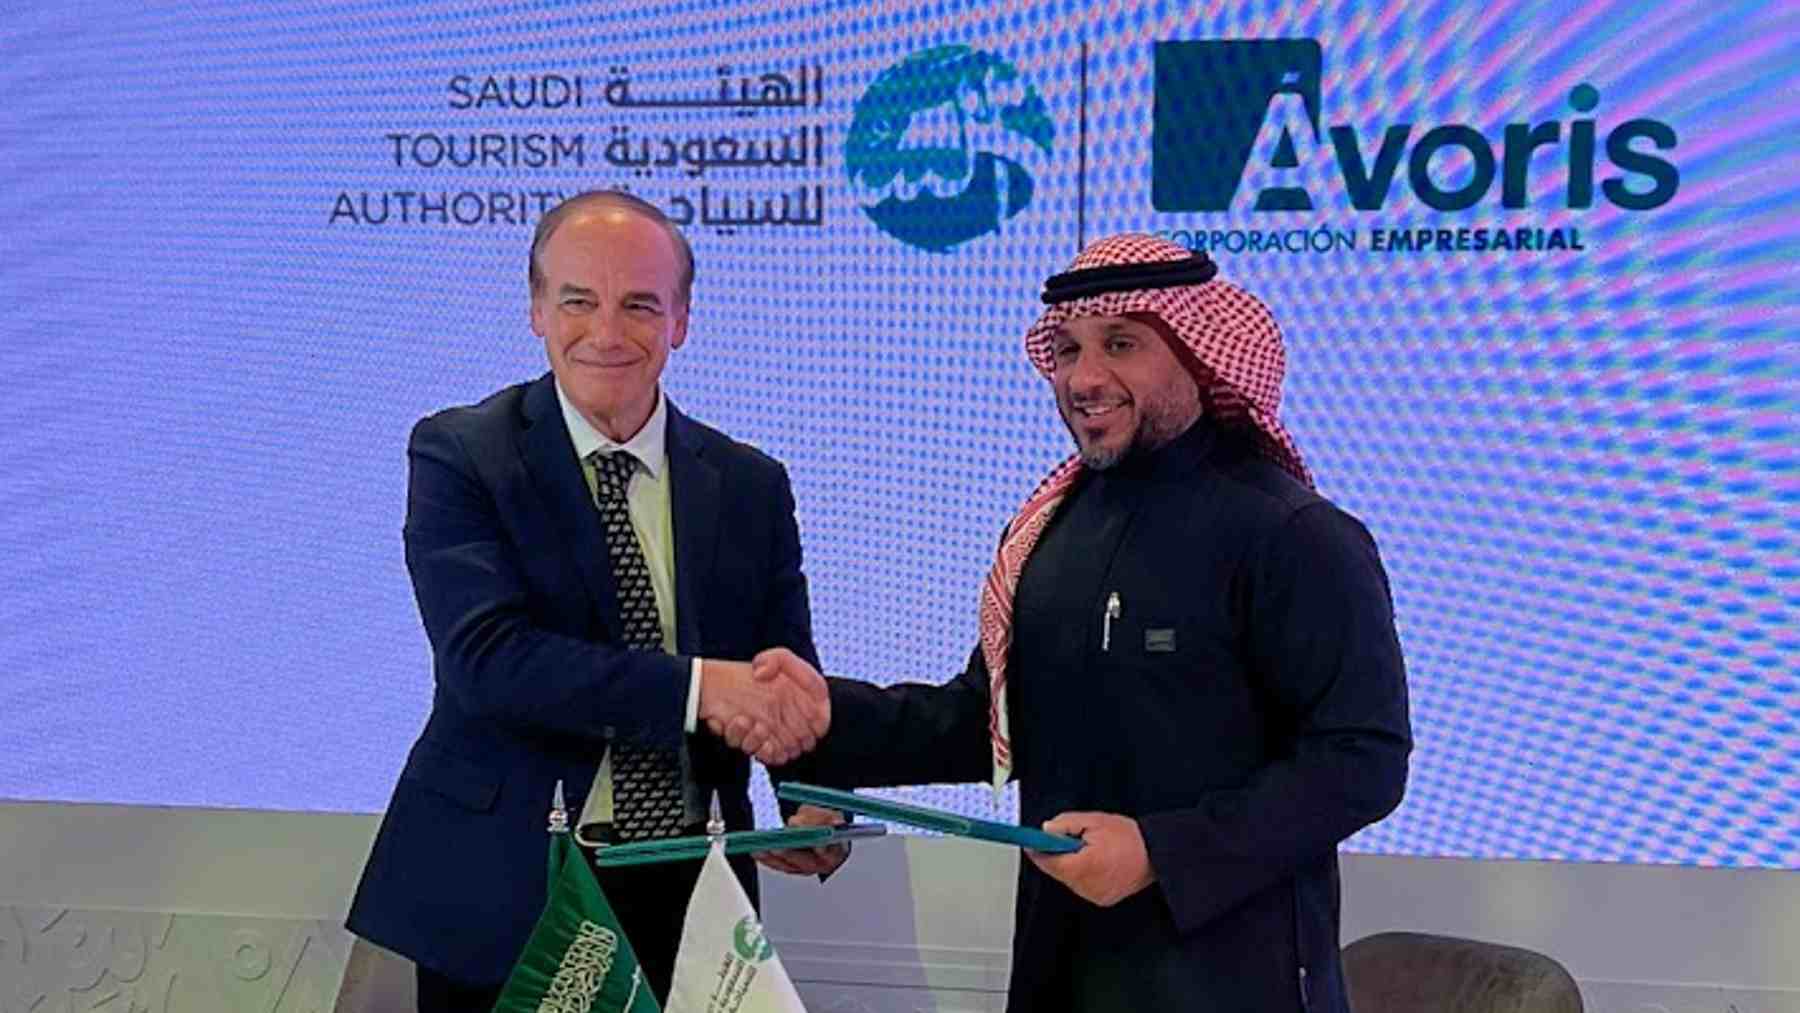 Ávoris y la Autoridad de Turismo Saudí firman un acuerdo histórico hasta 2026.